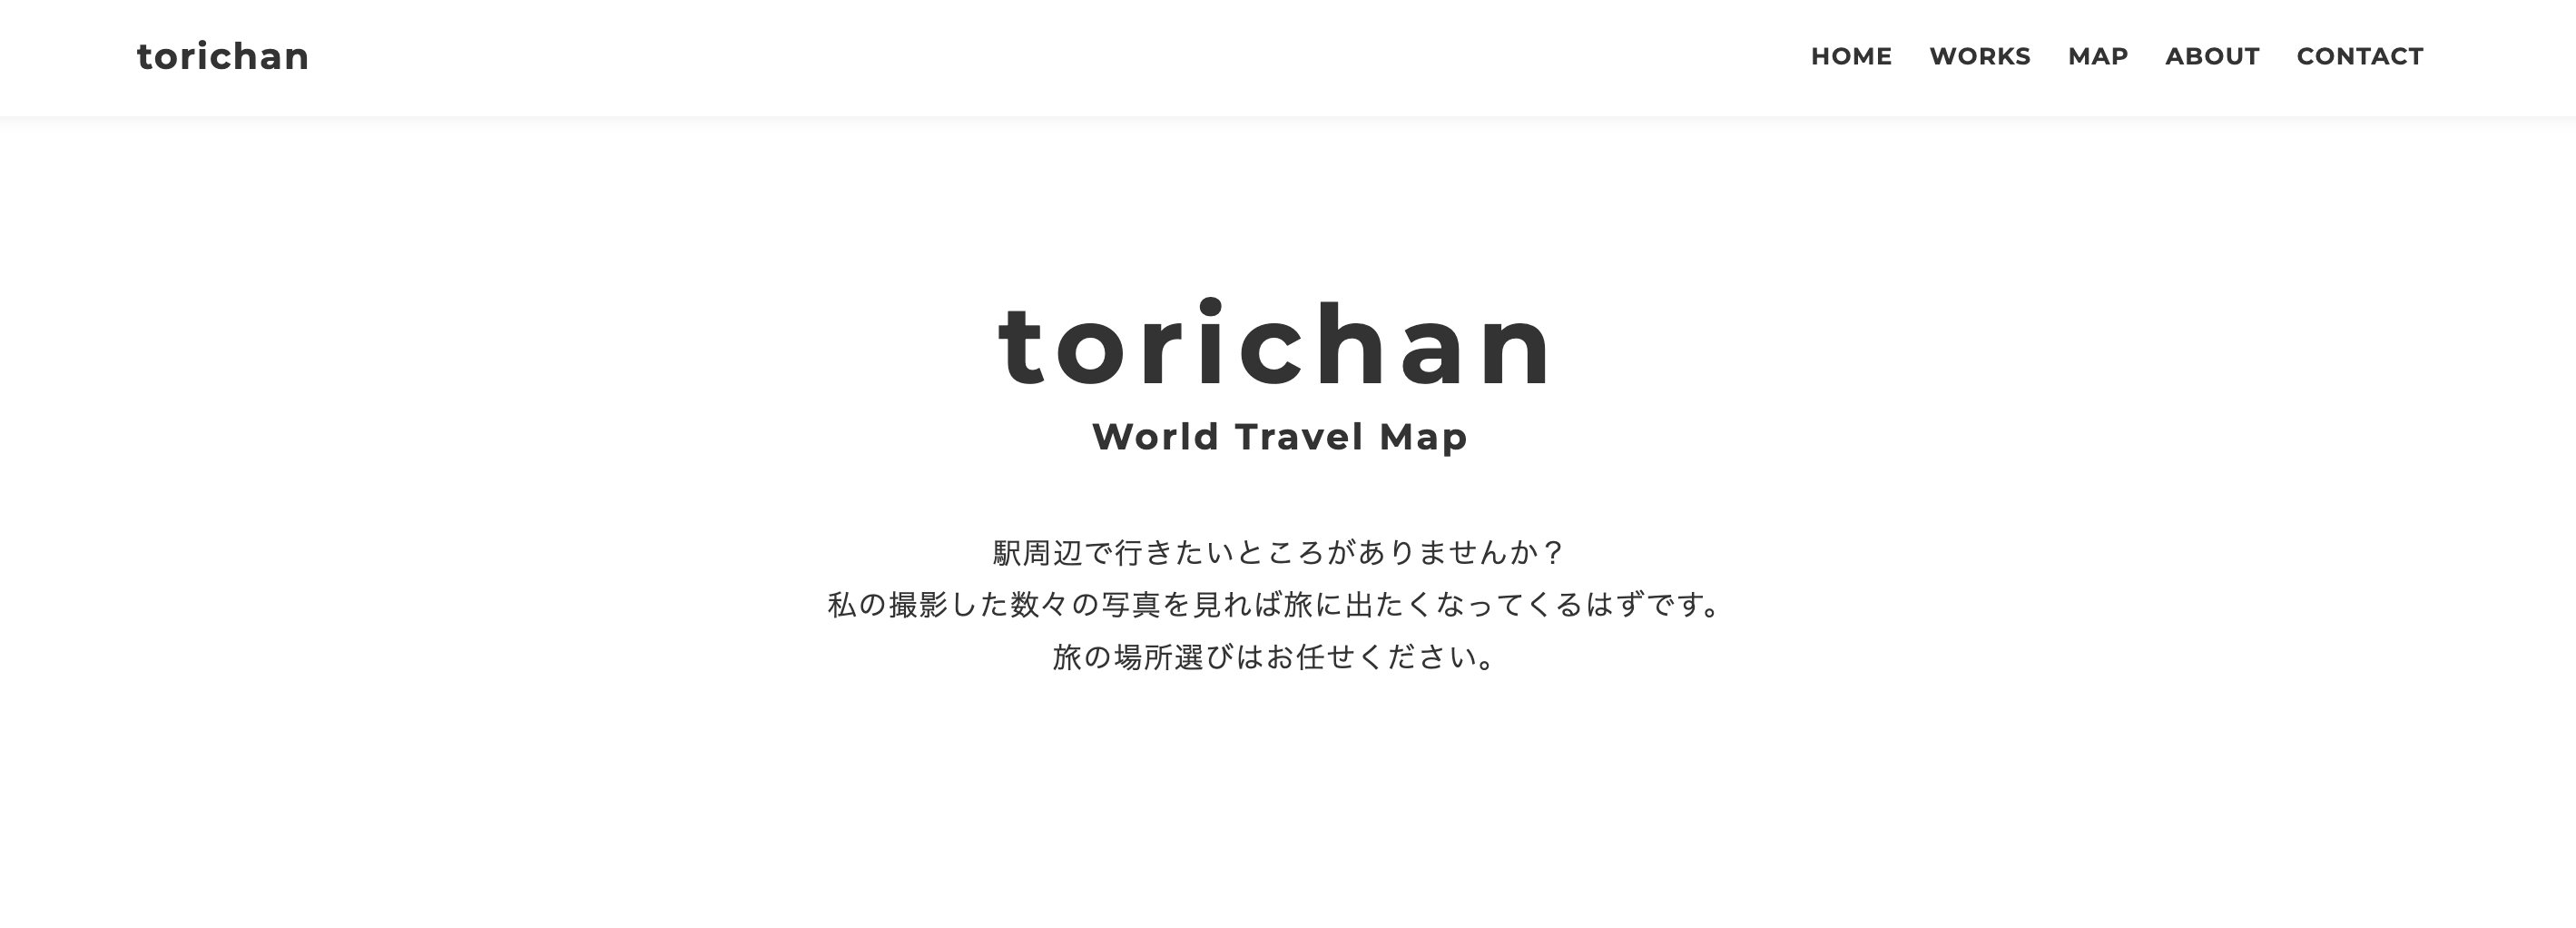 torichan.one img